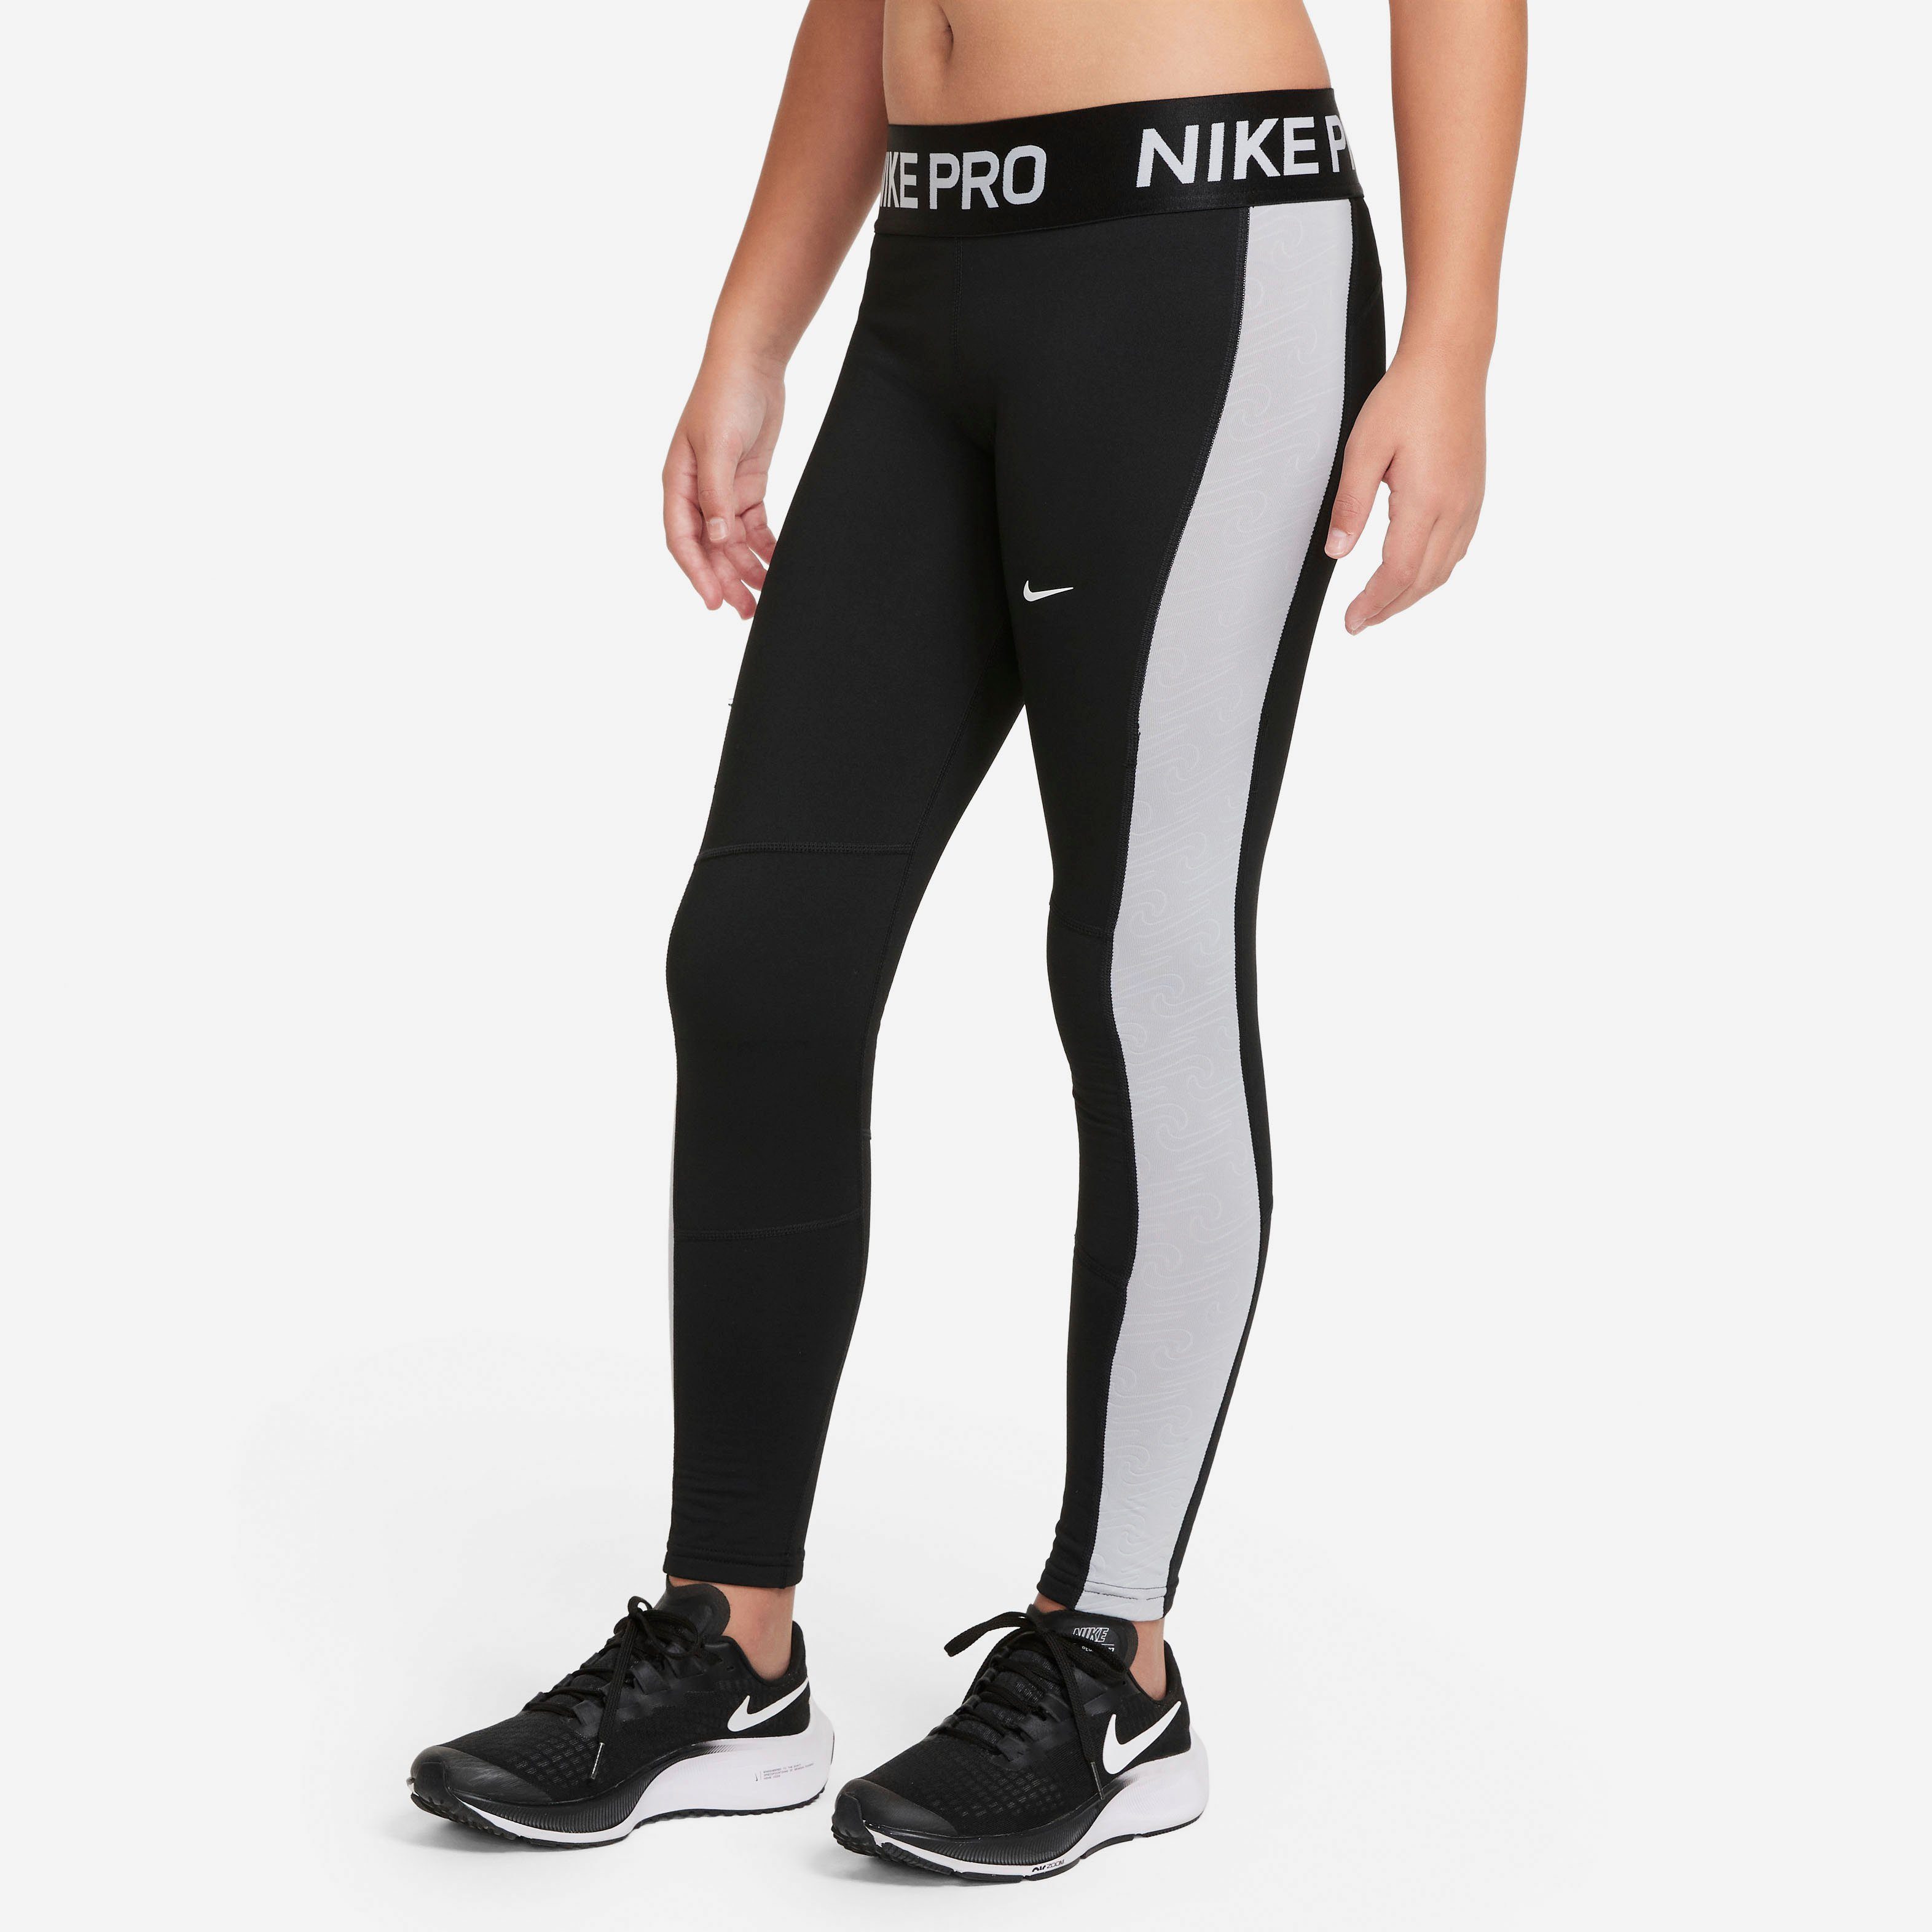 Nike Mädchen Tights online kaufen | OTTO